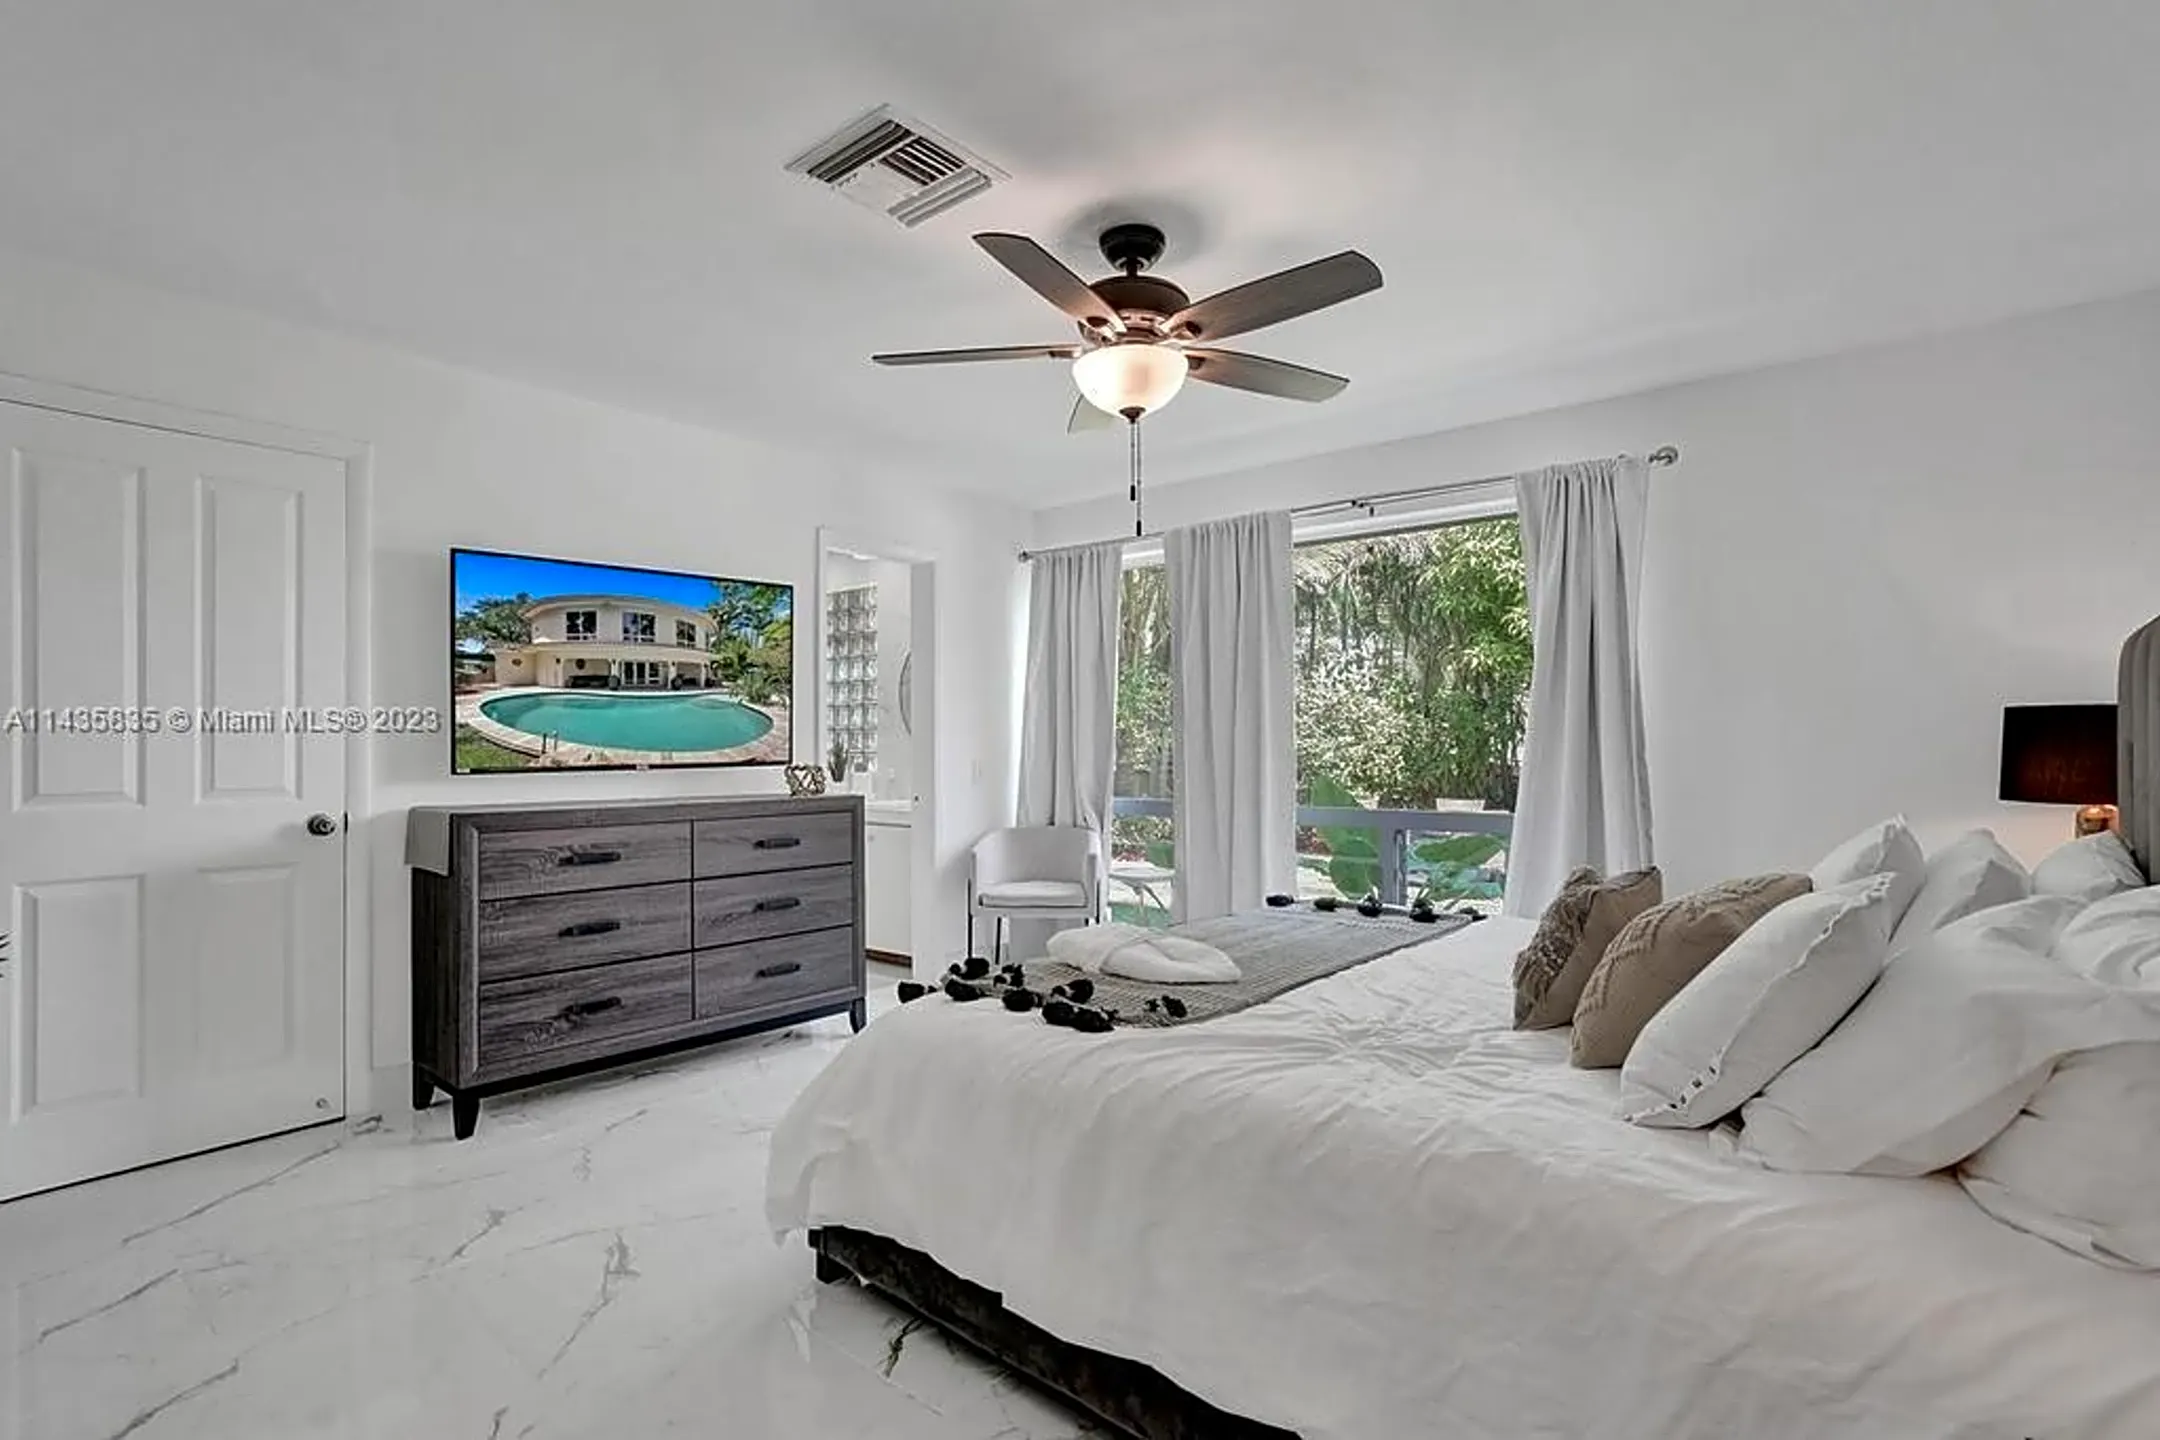 Bedroom - 1809 Coral Gardens Dr - Fort Lauderdale, FL